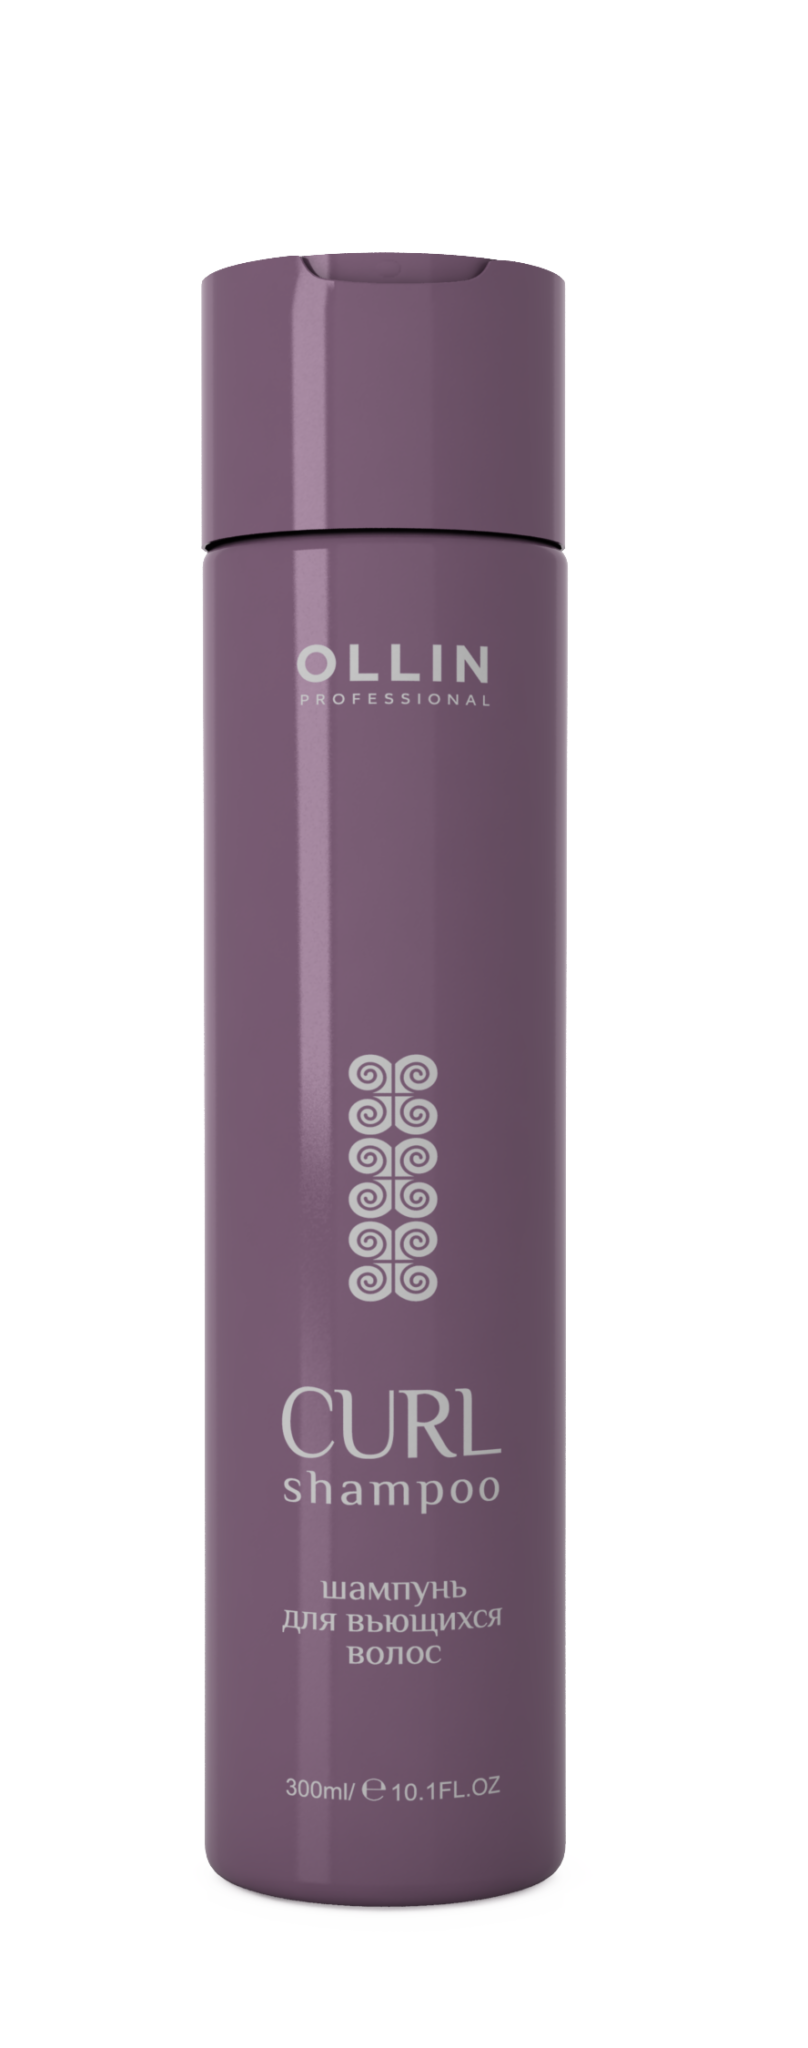 Ollin curl. Ollin, шампунь smooth, 300 мл. Ollin Curl шампунь. Ollin бальзам для вьющихся волос / Curl & smooth hair, 300 мл. Ollin smooth hair шампунь для гладкости волос 300мл / Shampoo for smooth hair.